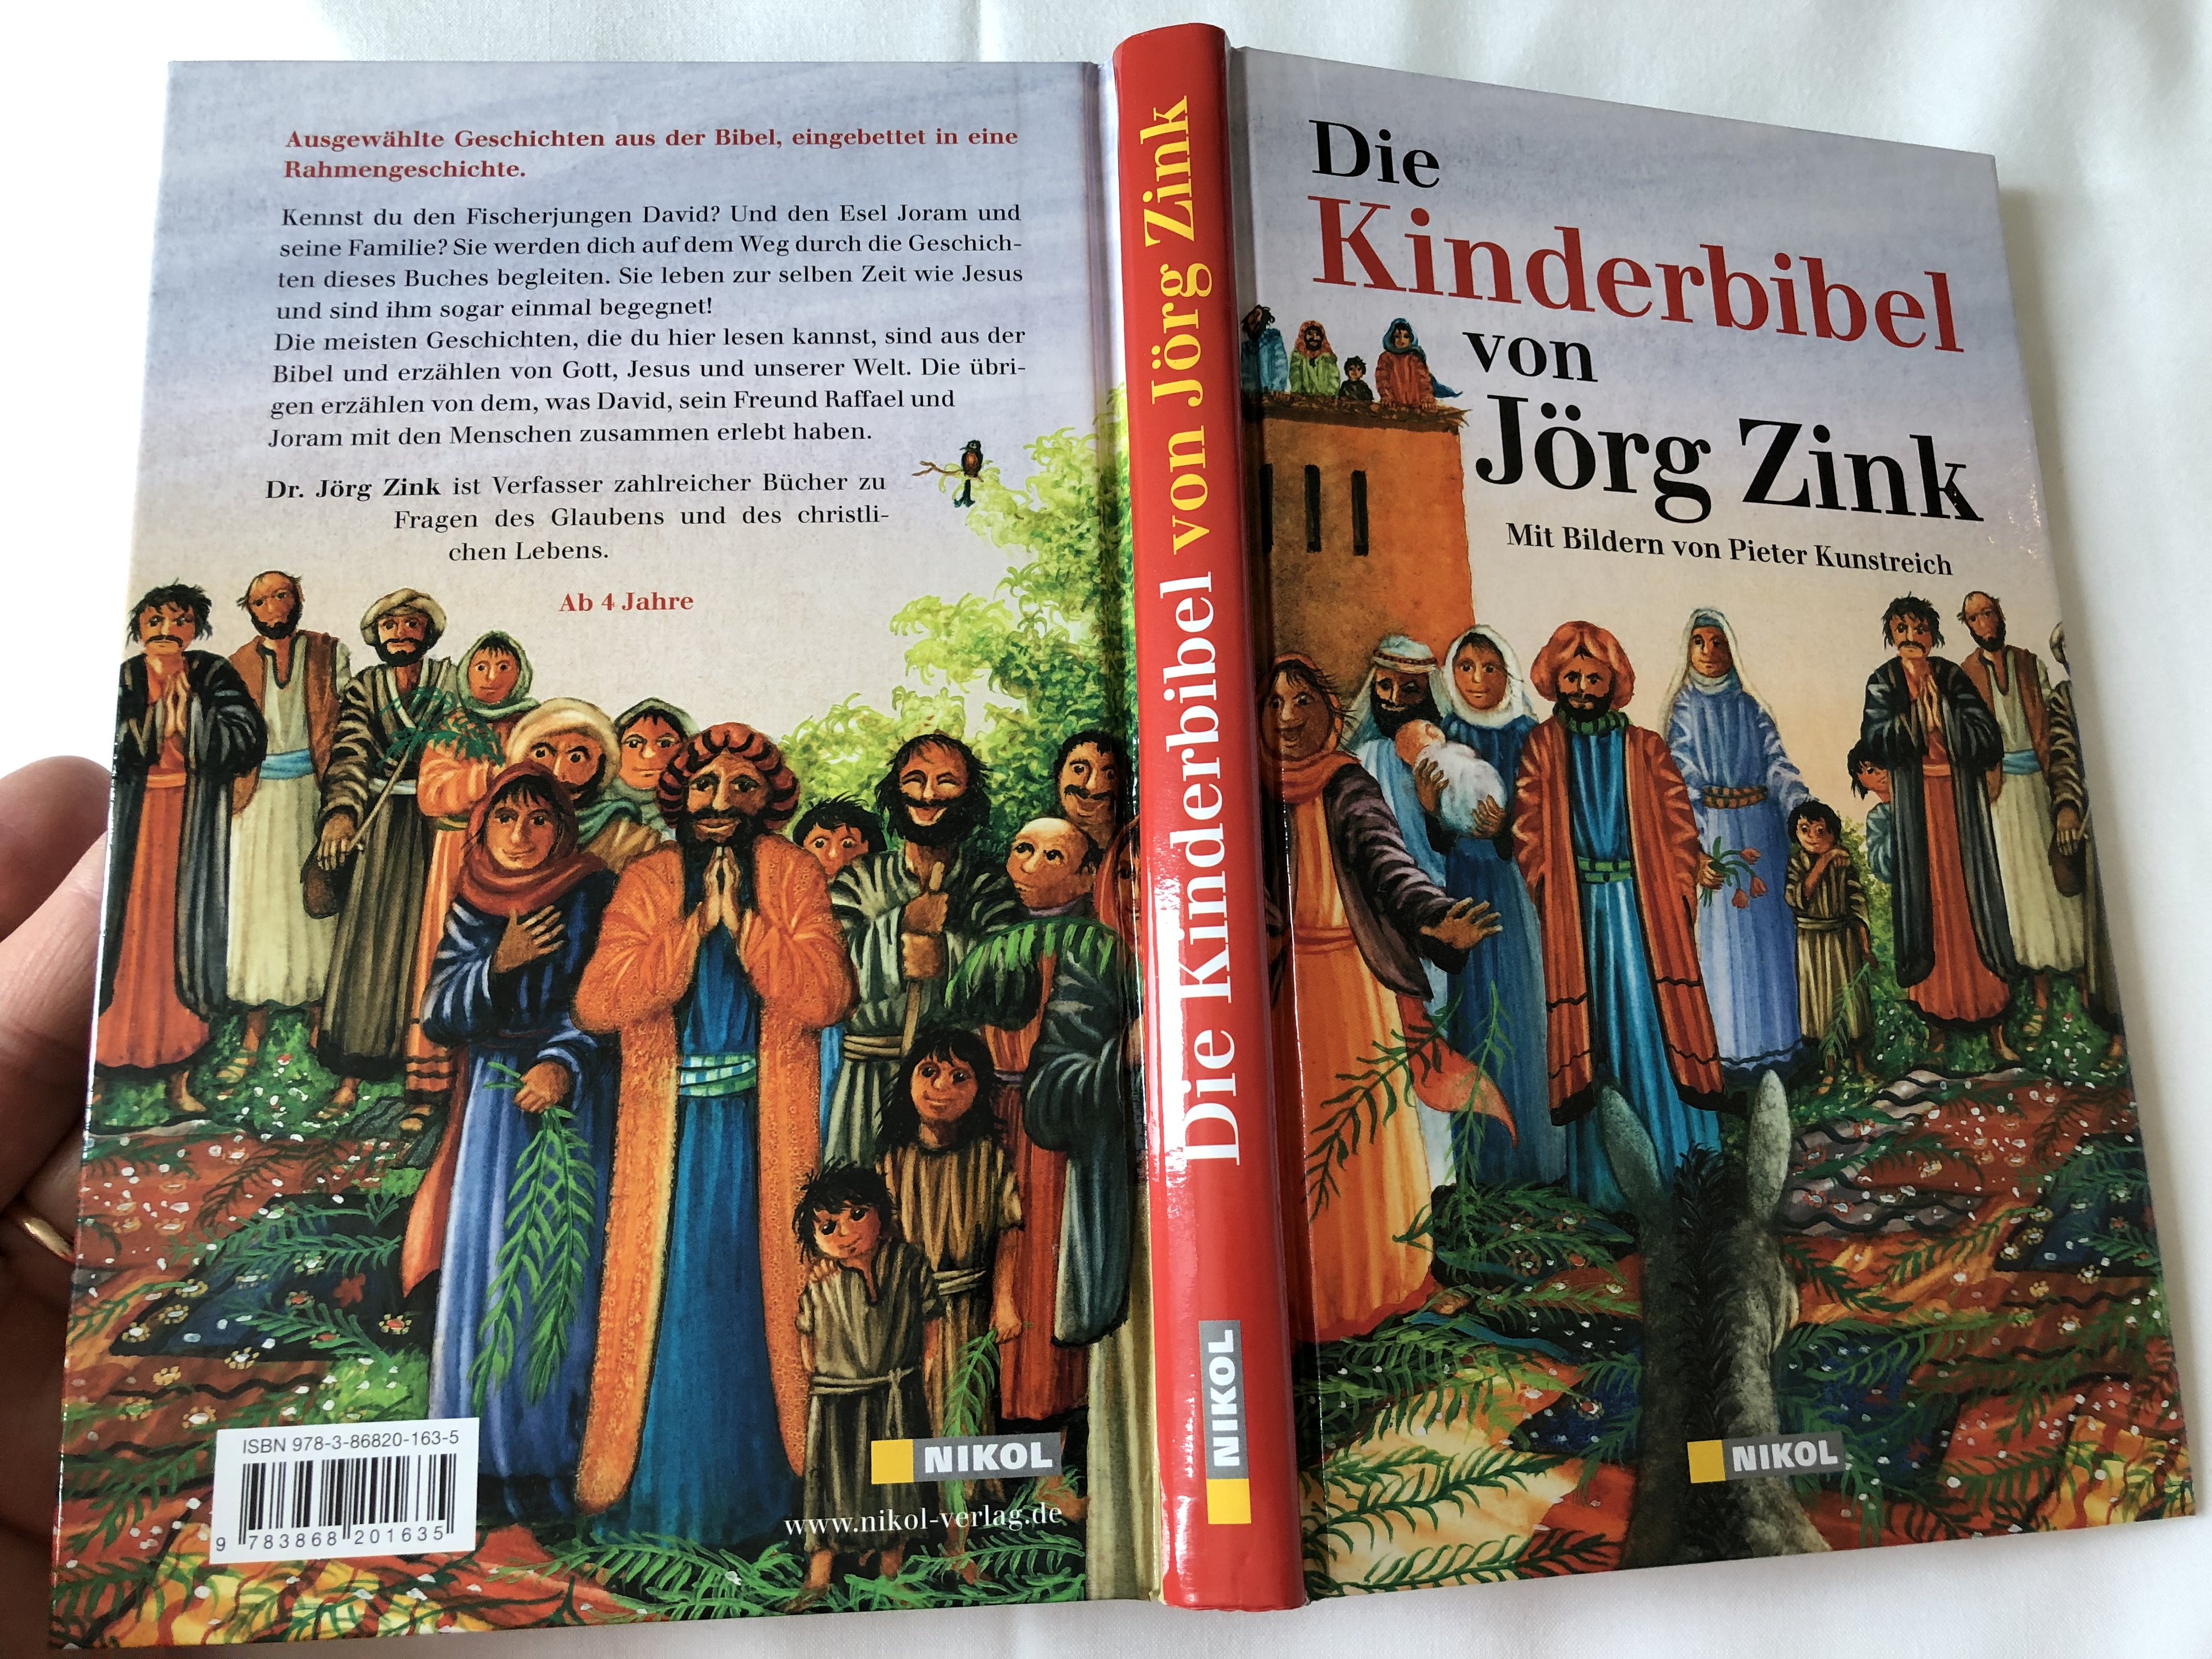 die-kinderbibel-von-j-rg-zink-mit-bildern-von-pieter-kunstreich-the-children-s-bible-by-j-rg-zink-with-illustrations-by-pieter-kunstreich-german-language-bible-for-children-aged-4-hardcover-15-.jpg